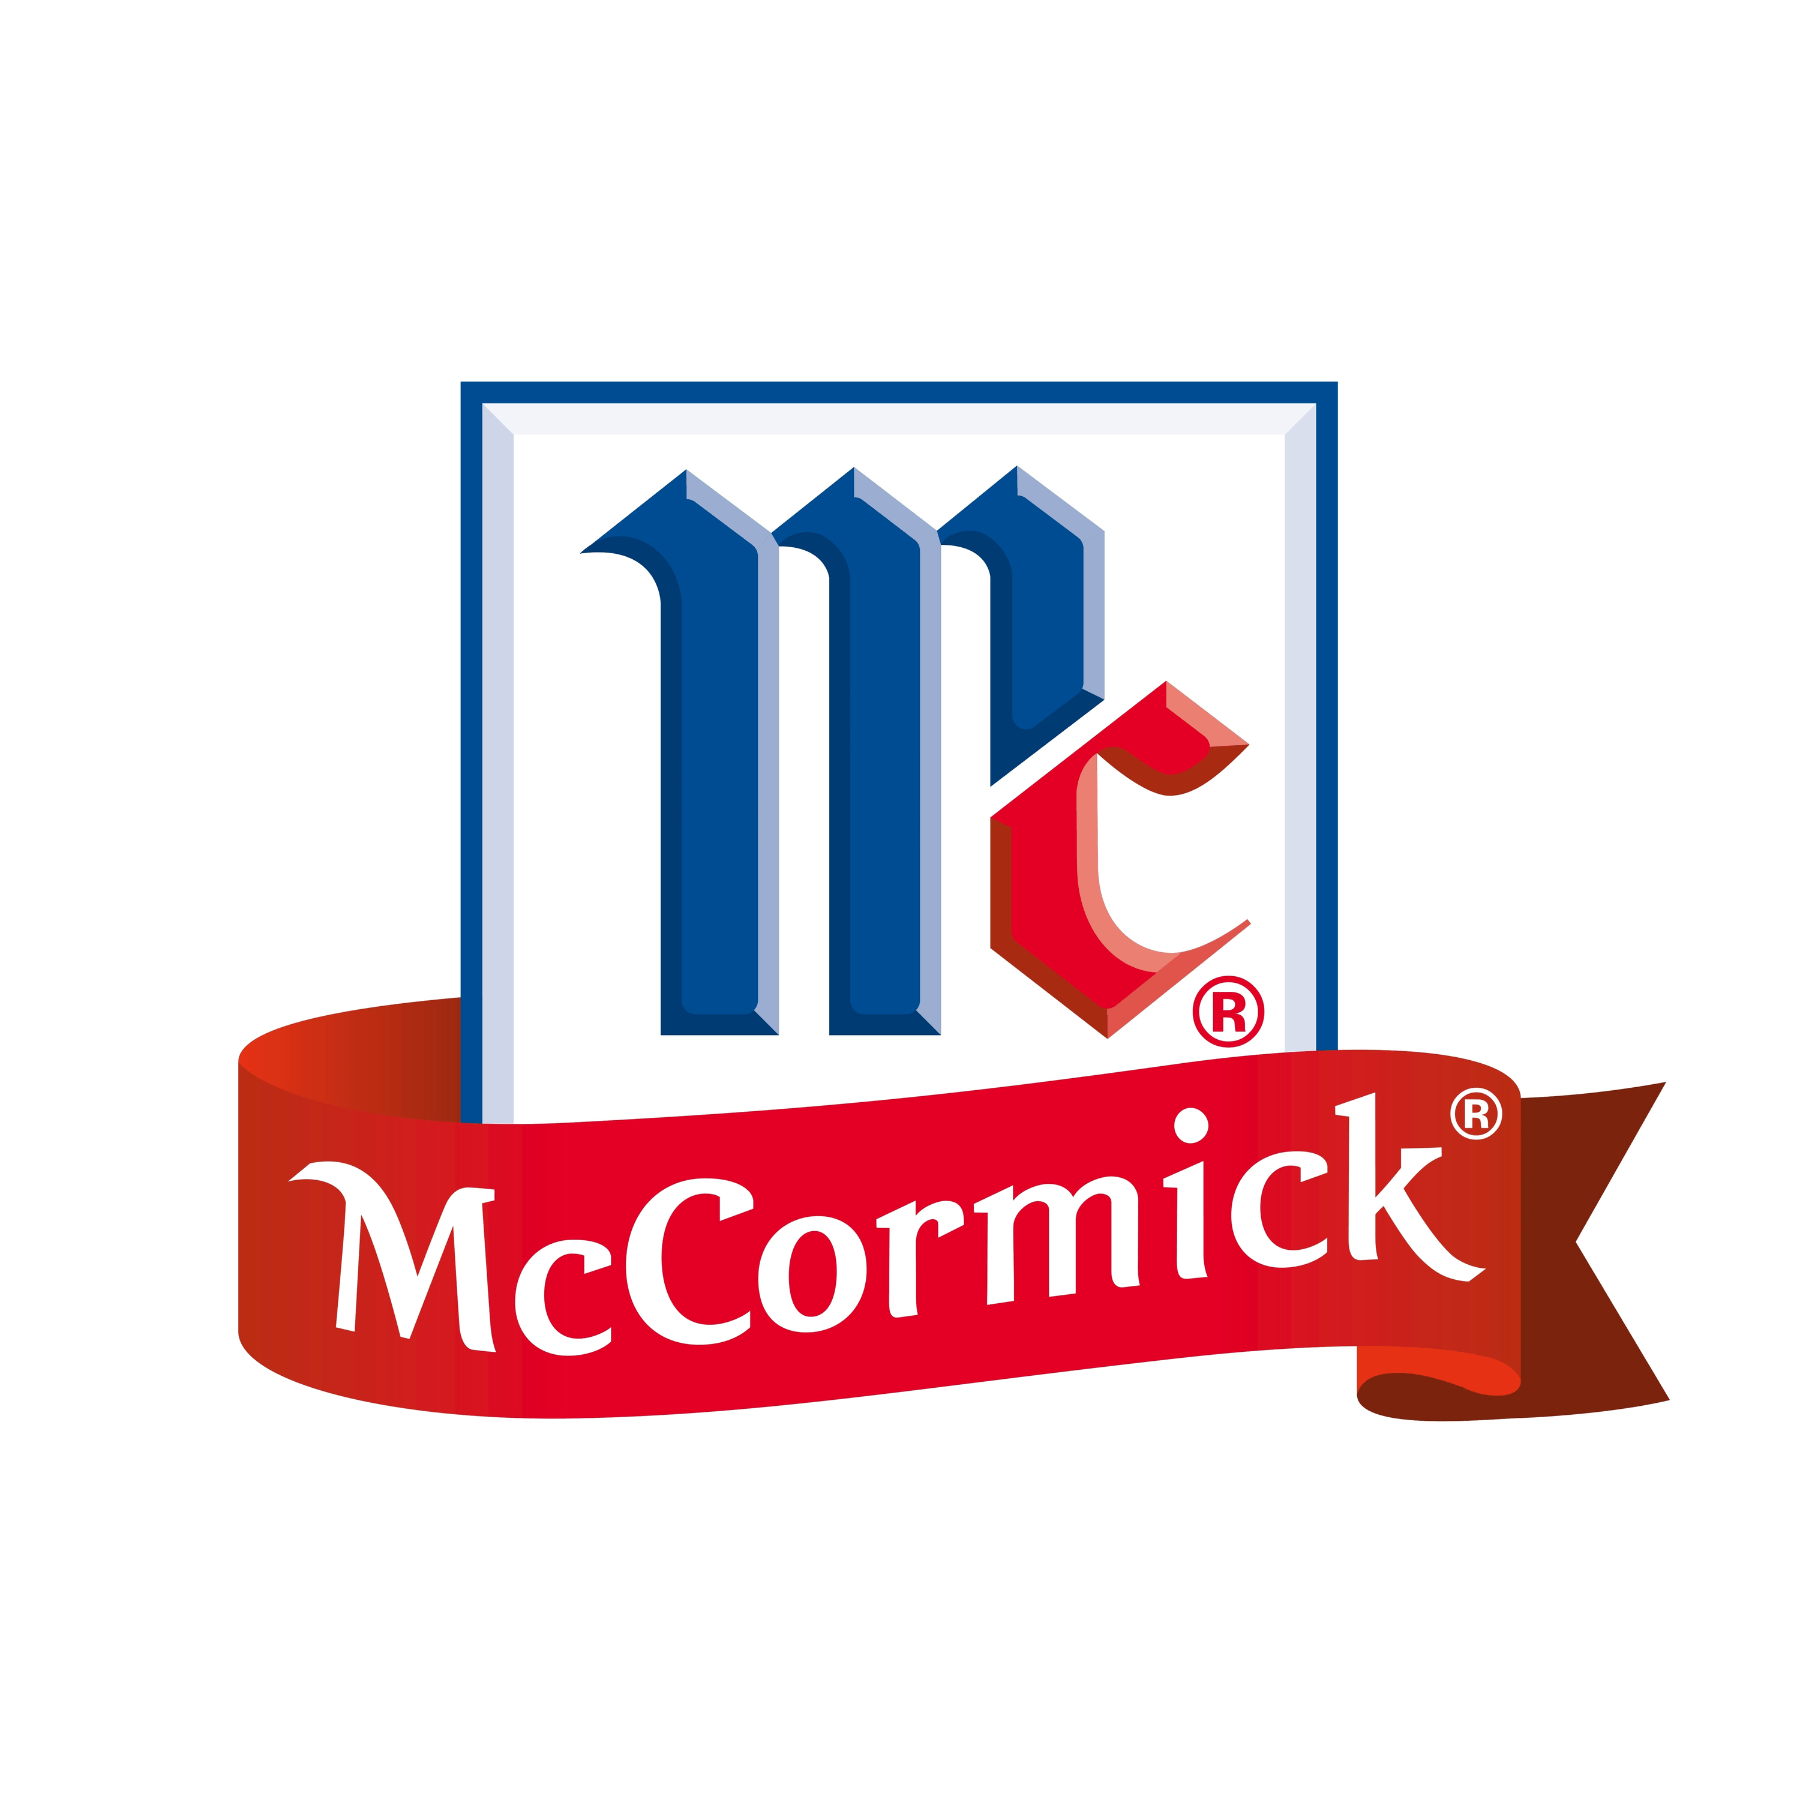 Mccormick